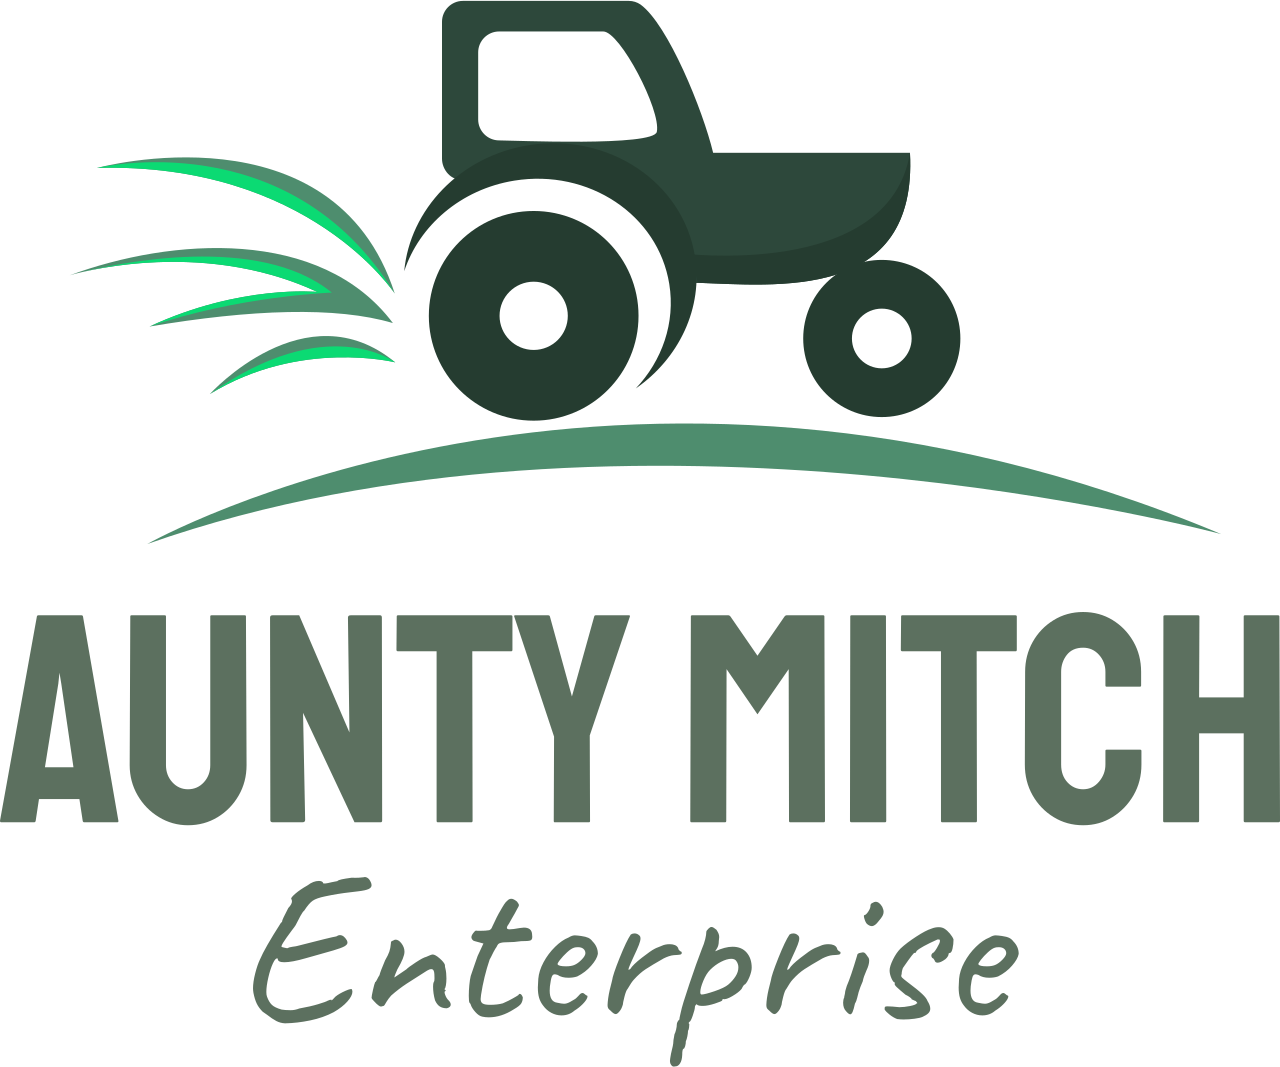 Aunty mitch's logo